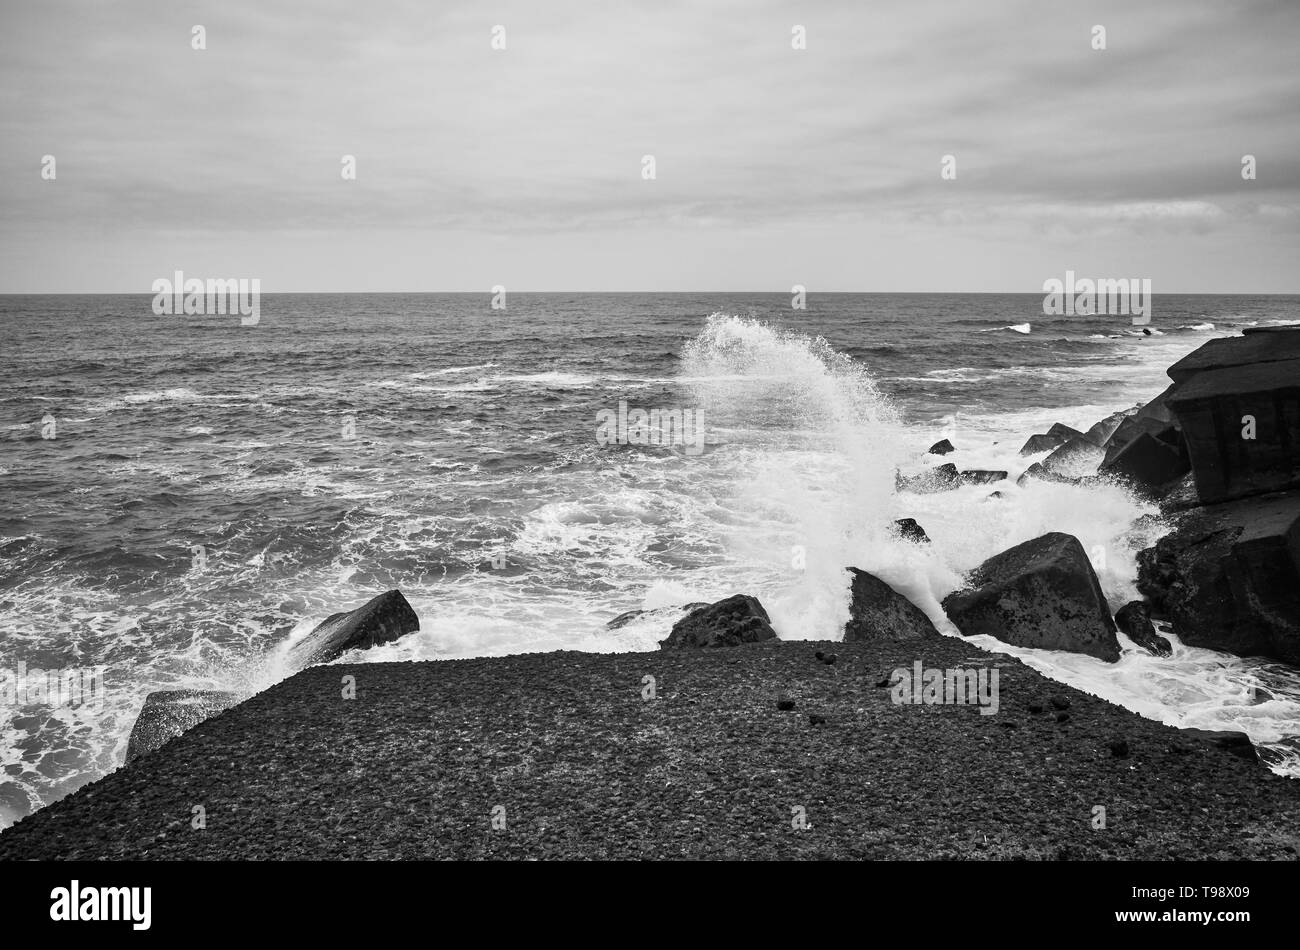 Photo noir et blanc de vagues se brisant sur les rochers, Tenerife, Espagne. Banque D'Images